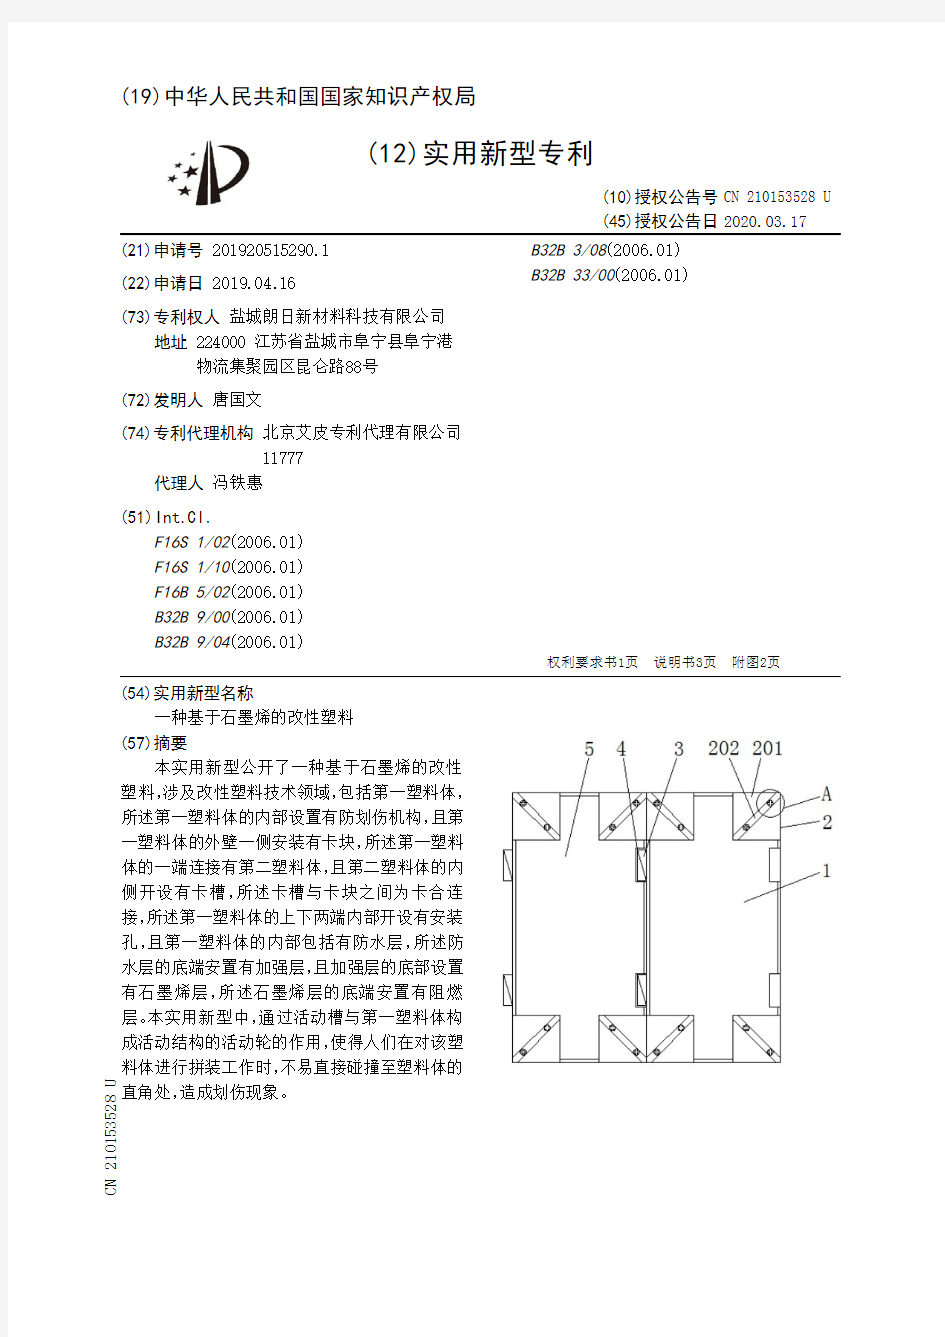 【CN210153528U】一种基于石墨烯的改性塑料【专利】